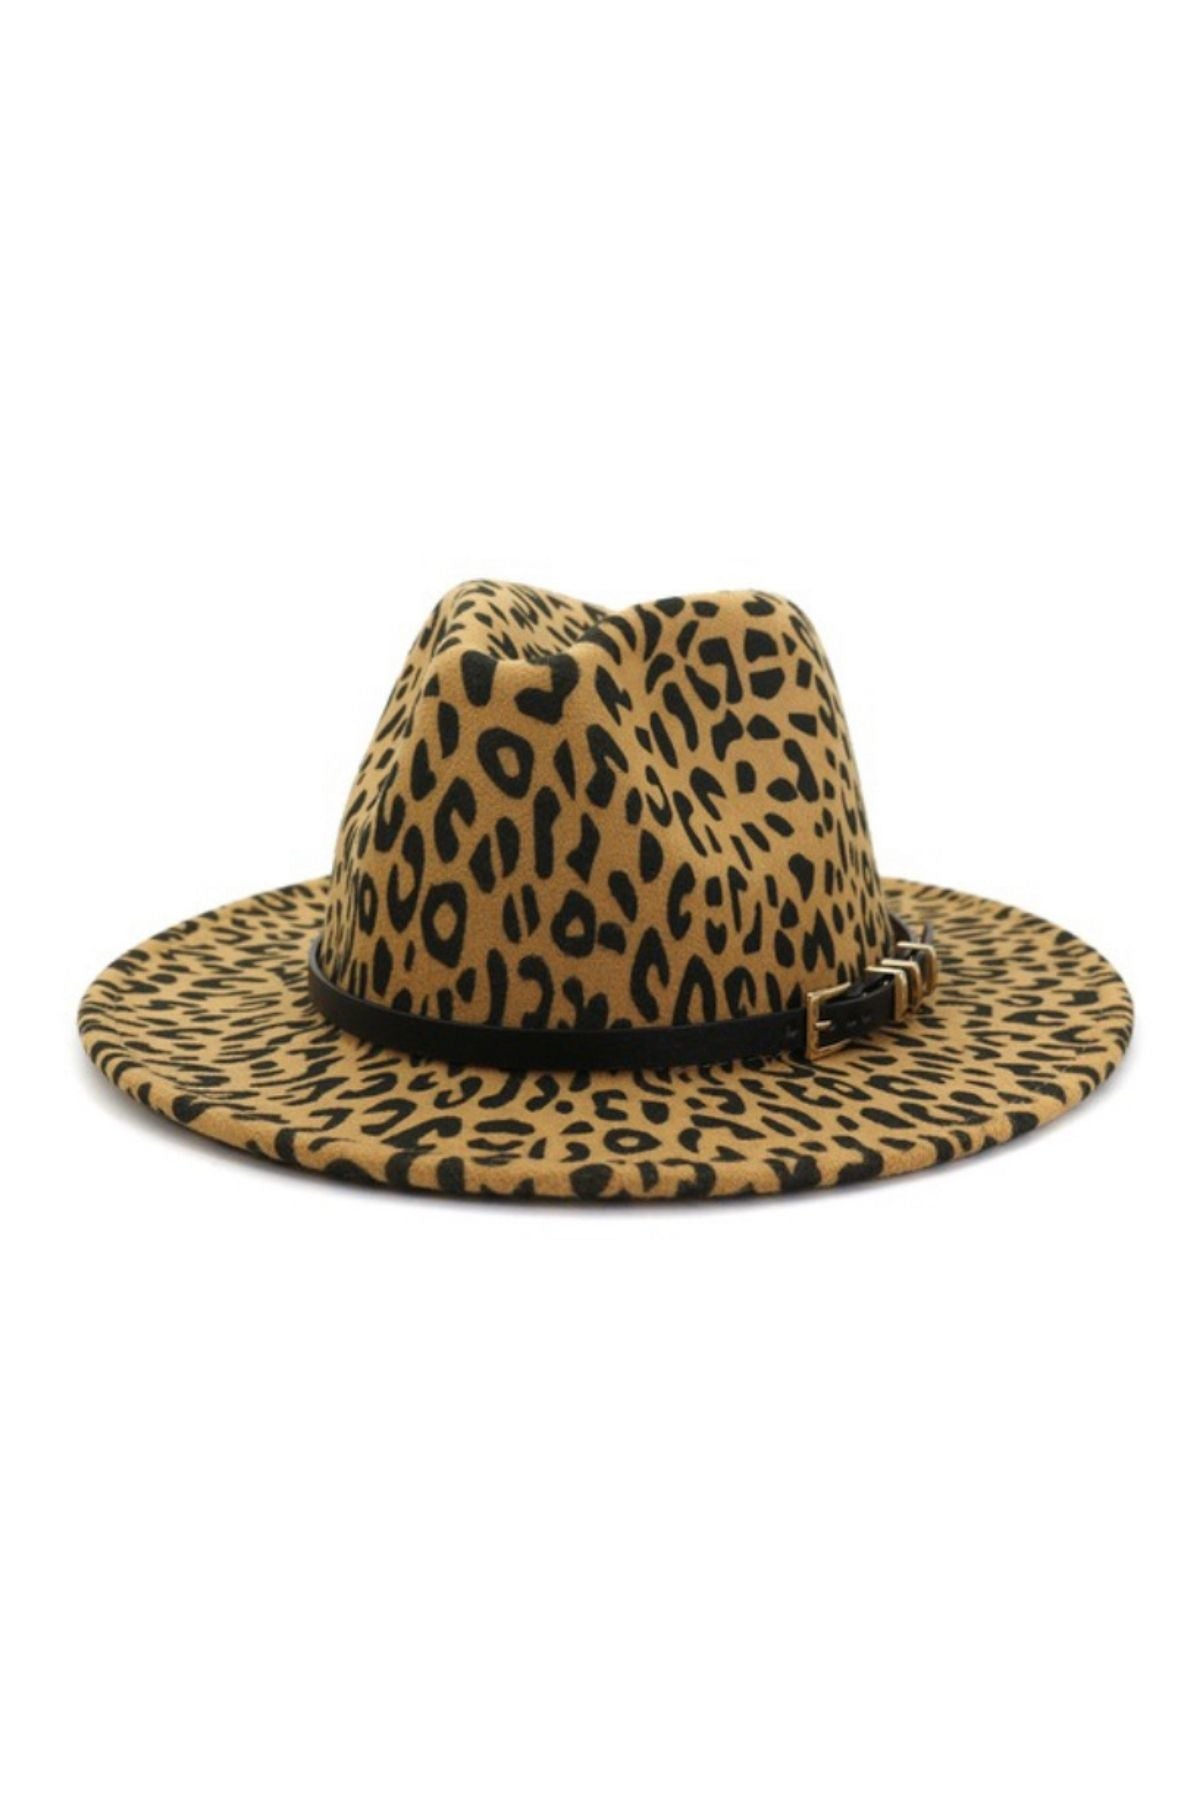 leopard-pattern-hats-camel